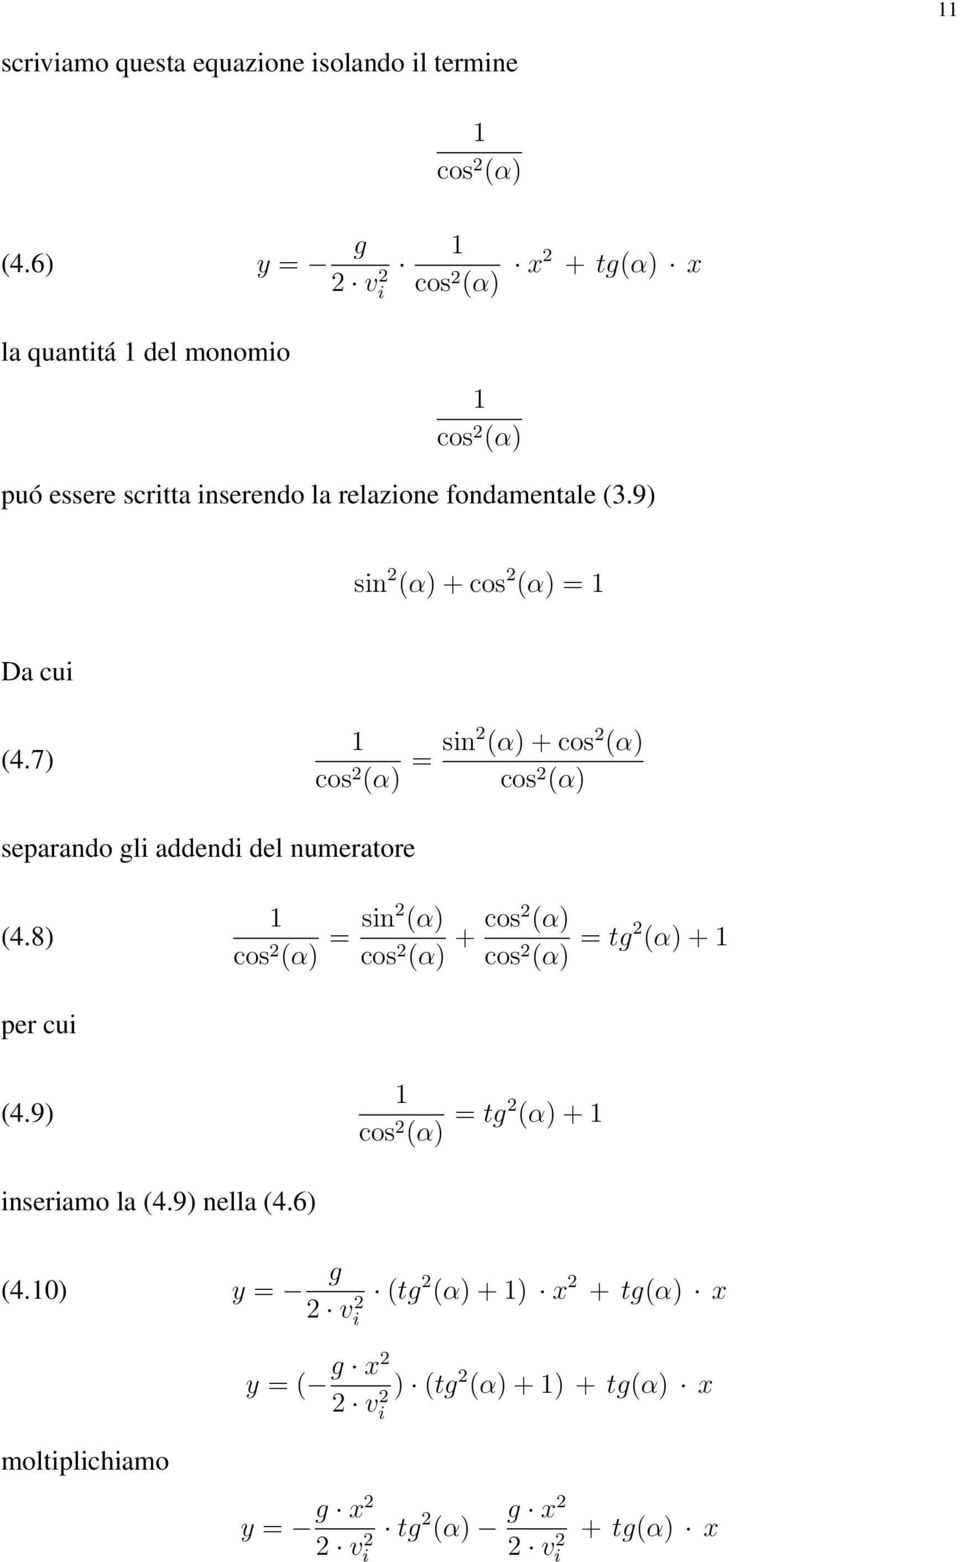 9) sin (α) + cos (α) = 1 Da cui (4.7) 1 cos (α) = sin (α) + cos (α) cos (α) separando li addendi del numeratore (4.